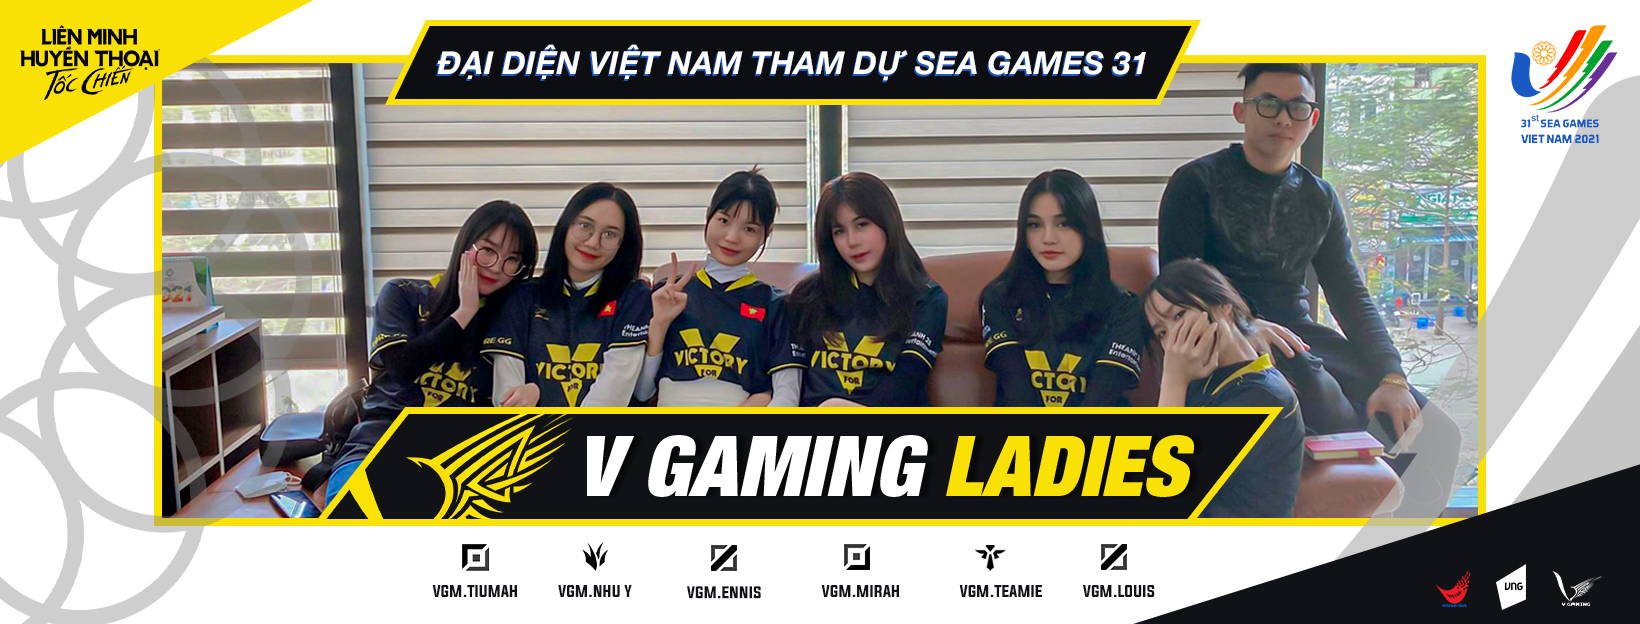 FADO Go và V Gaming đồng hành với hai đội tuyển Esport Việt Nam ...